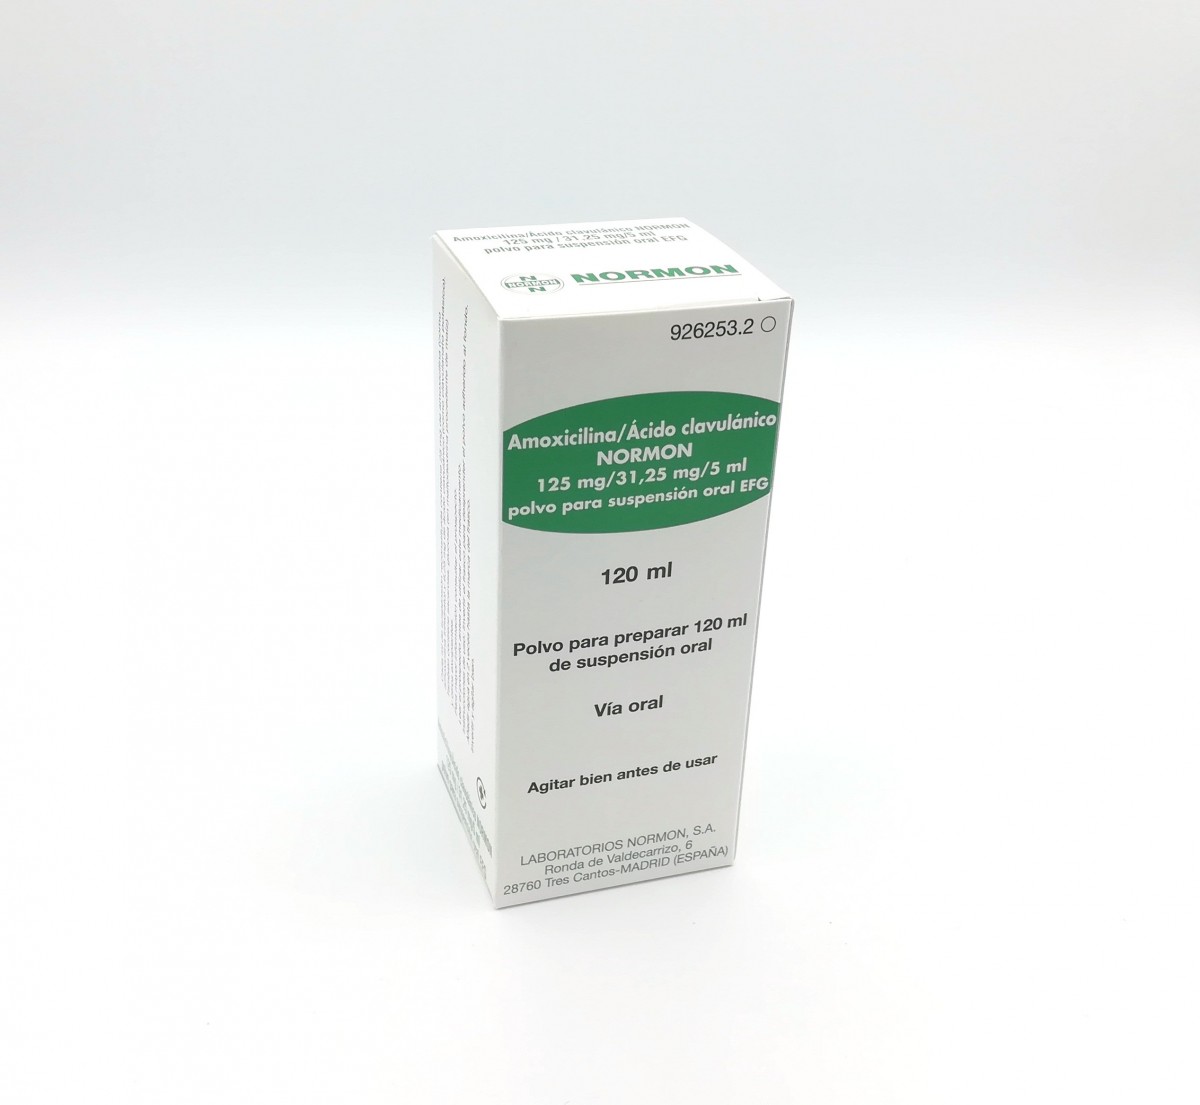 AMOXICILINA/ACIDO CLAVULANICO NORMON 125 mg/31,25 mg/5 ml POLVO PARA SUSPENSION ORAL EFG, 1 frasco de 120 ml fotografía del envase.